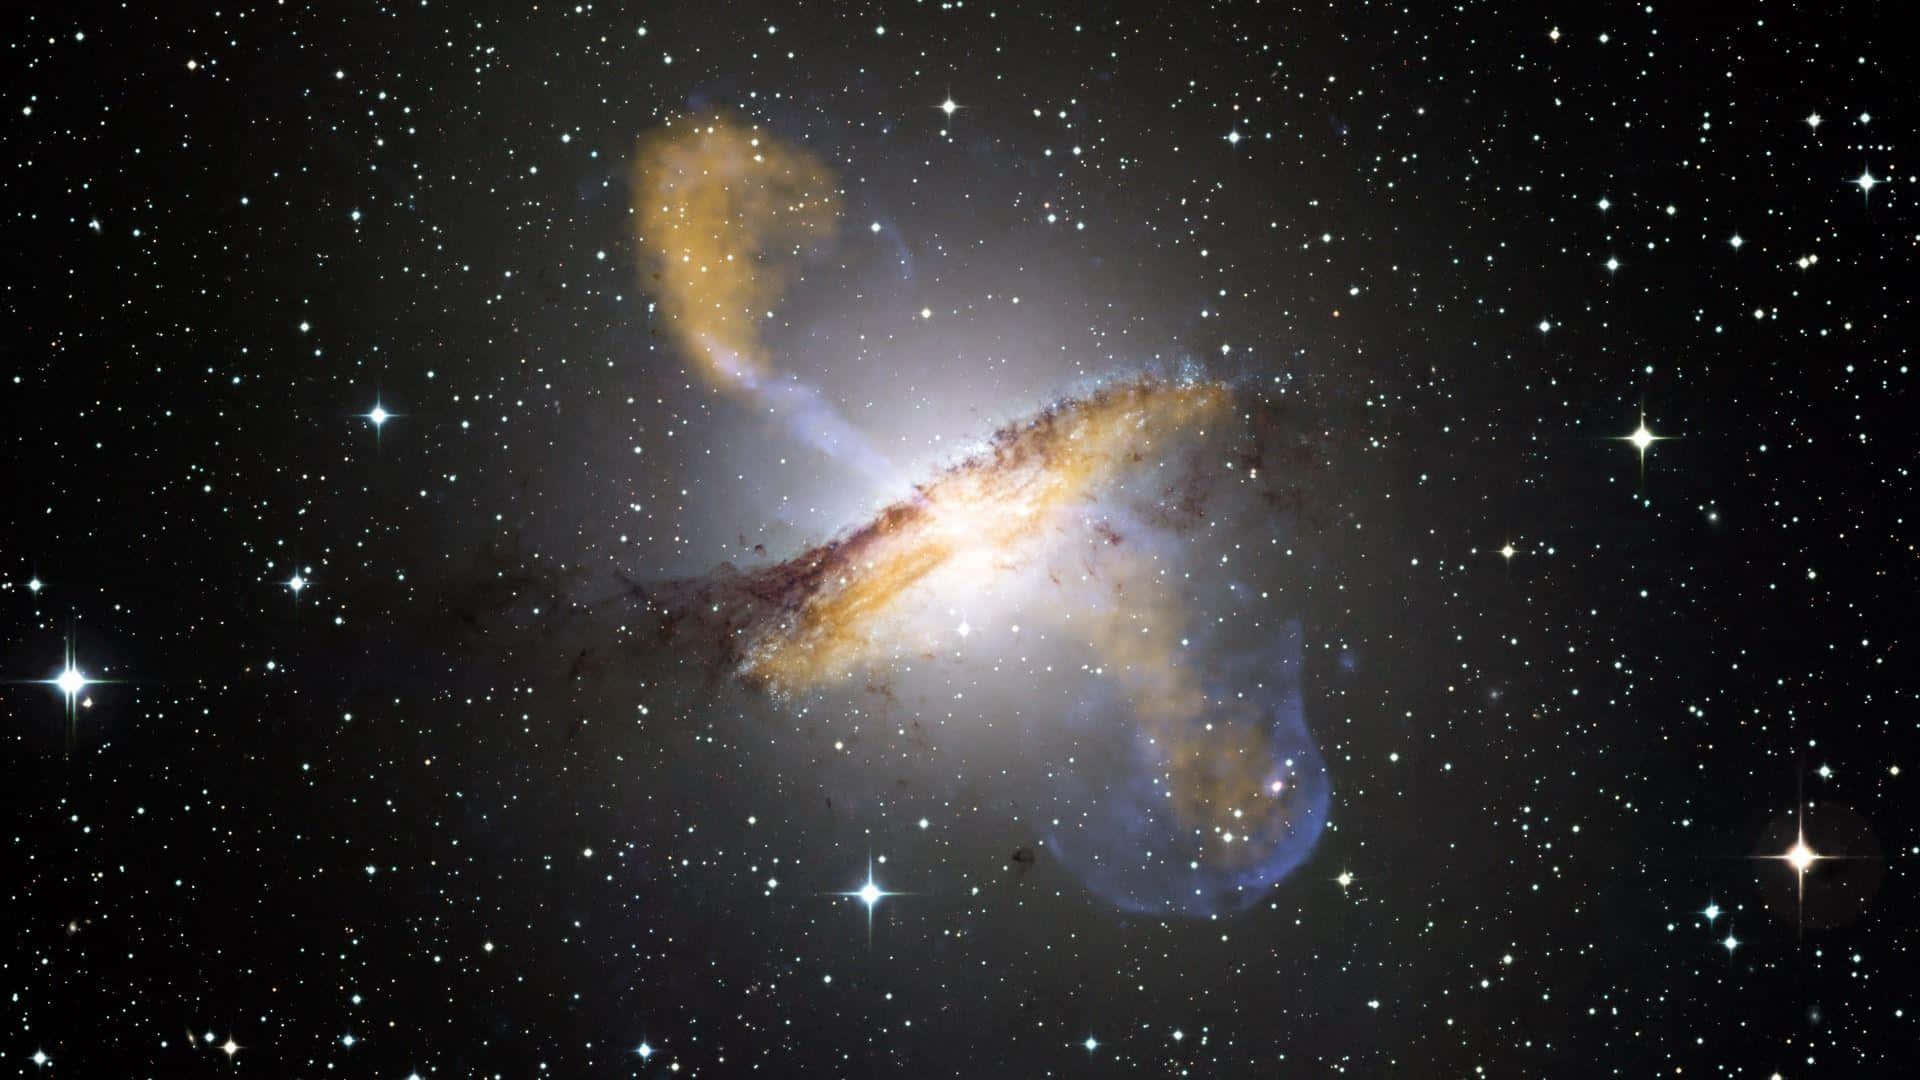 4kbillede Af Hubble-rumteleskopet. Wallpaper